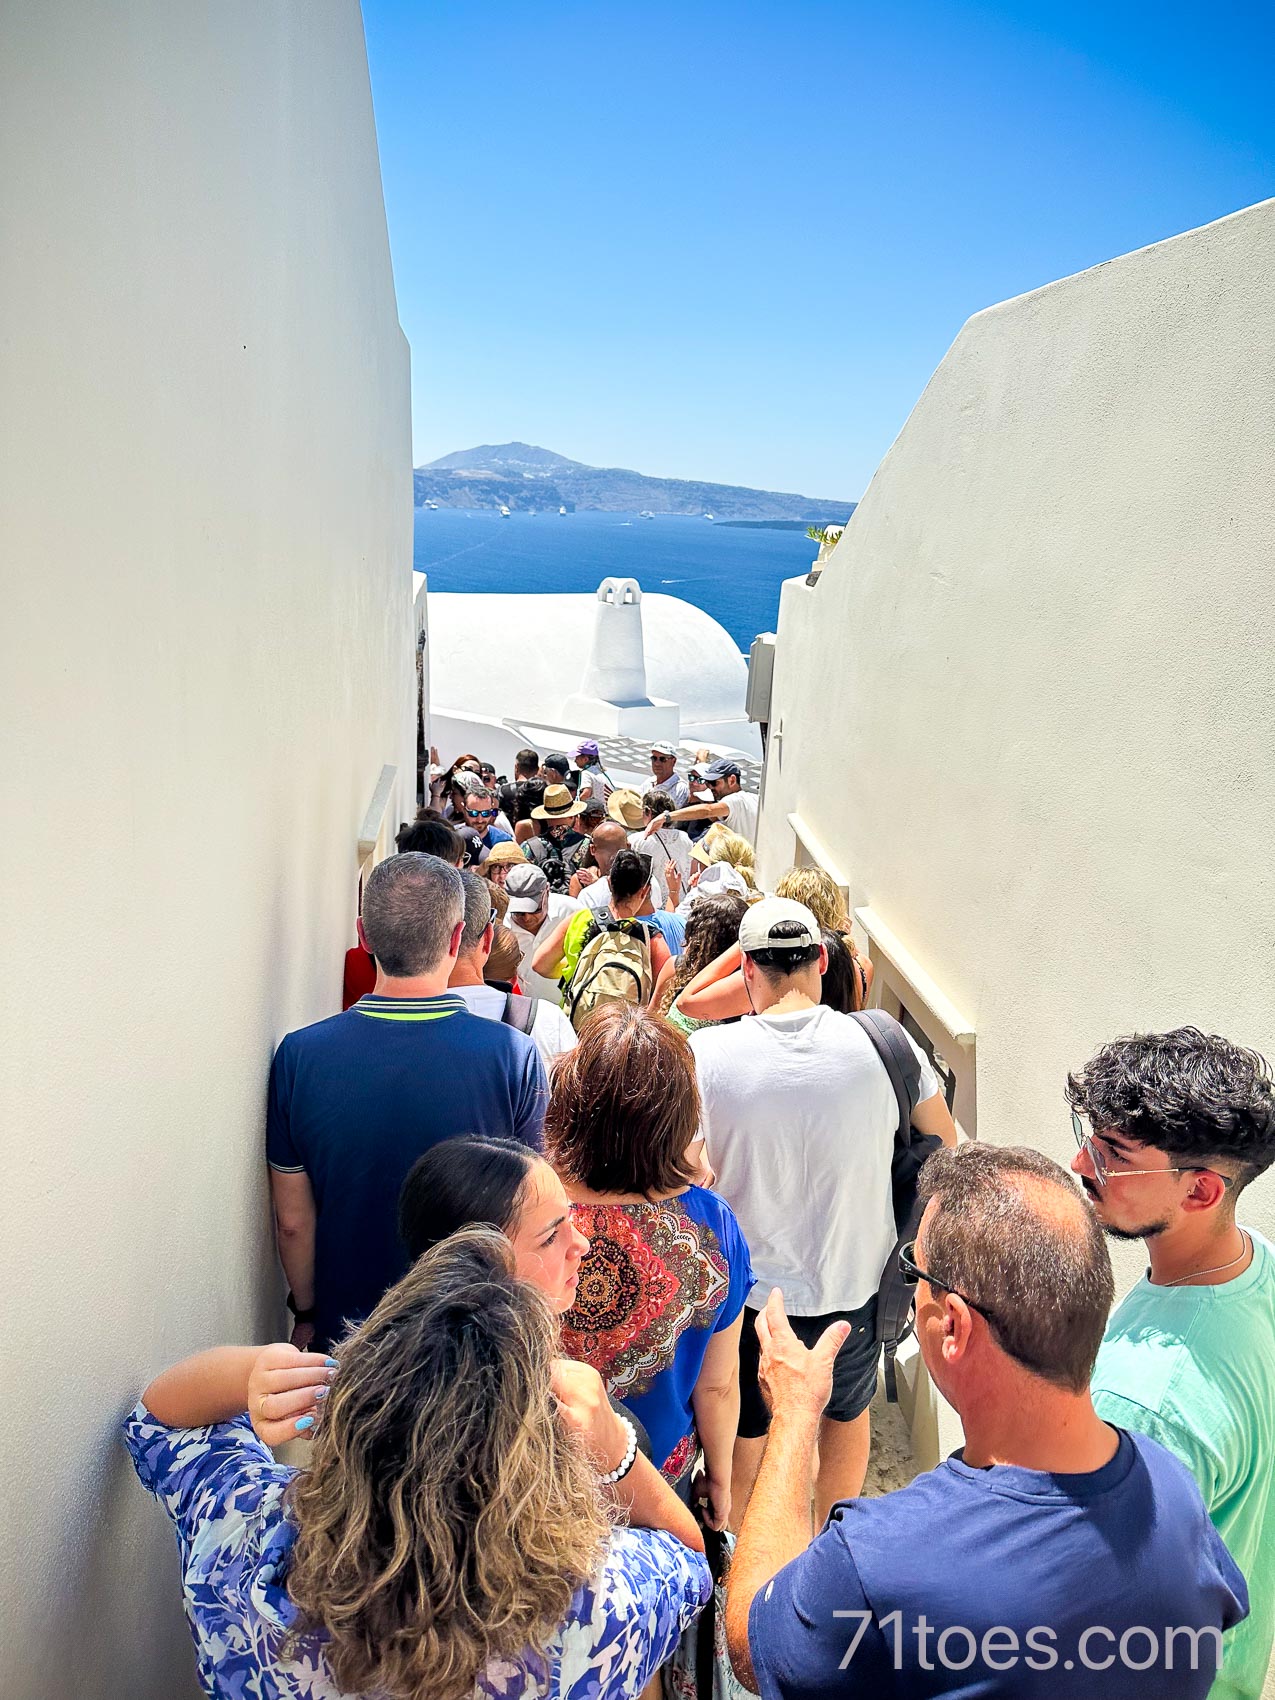 huge crowds in Santorini